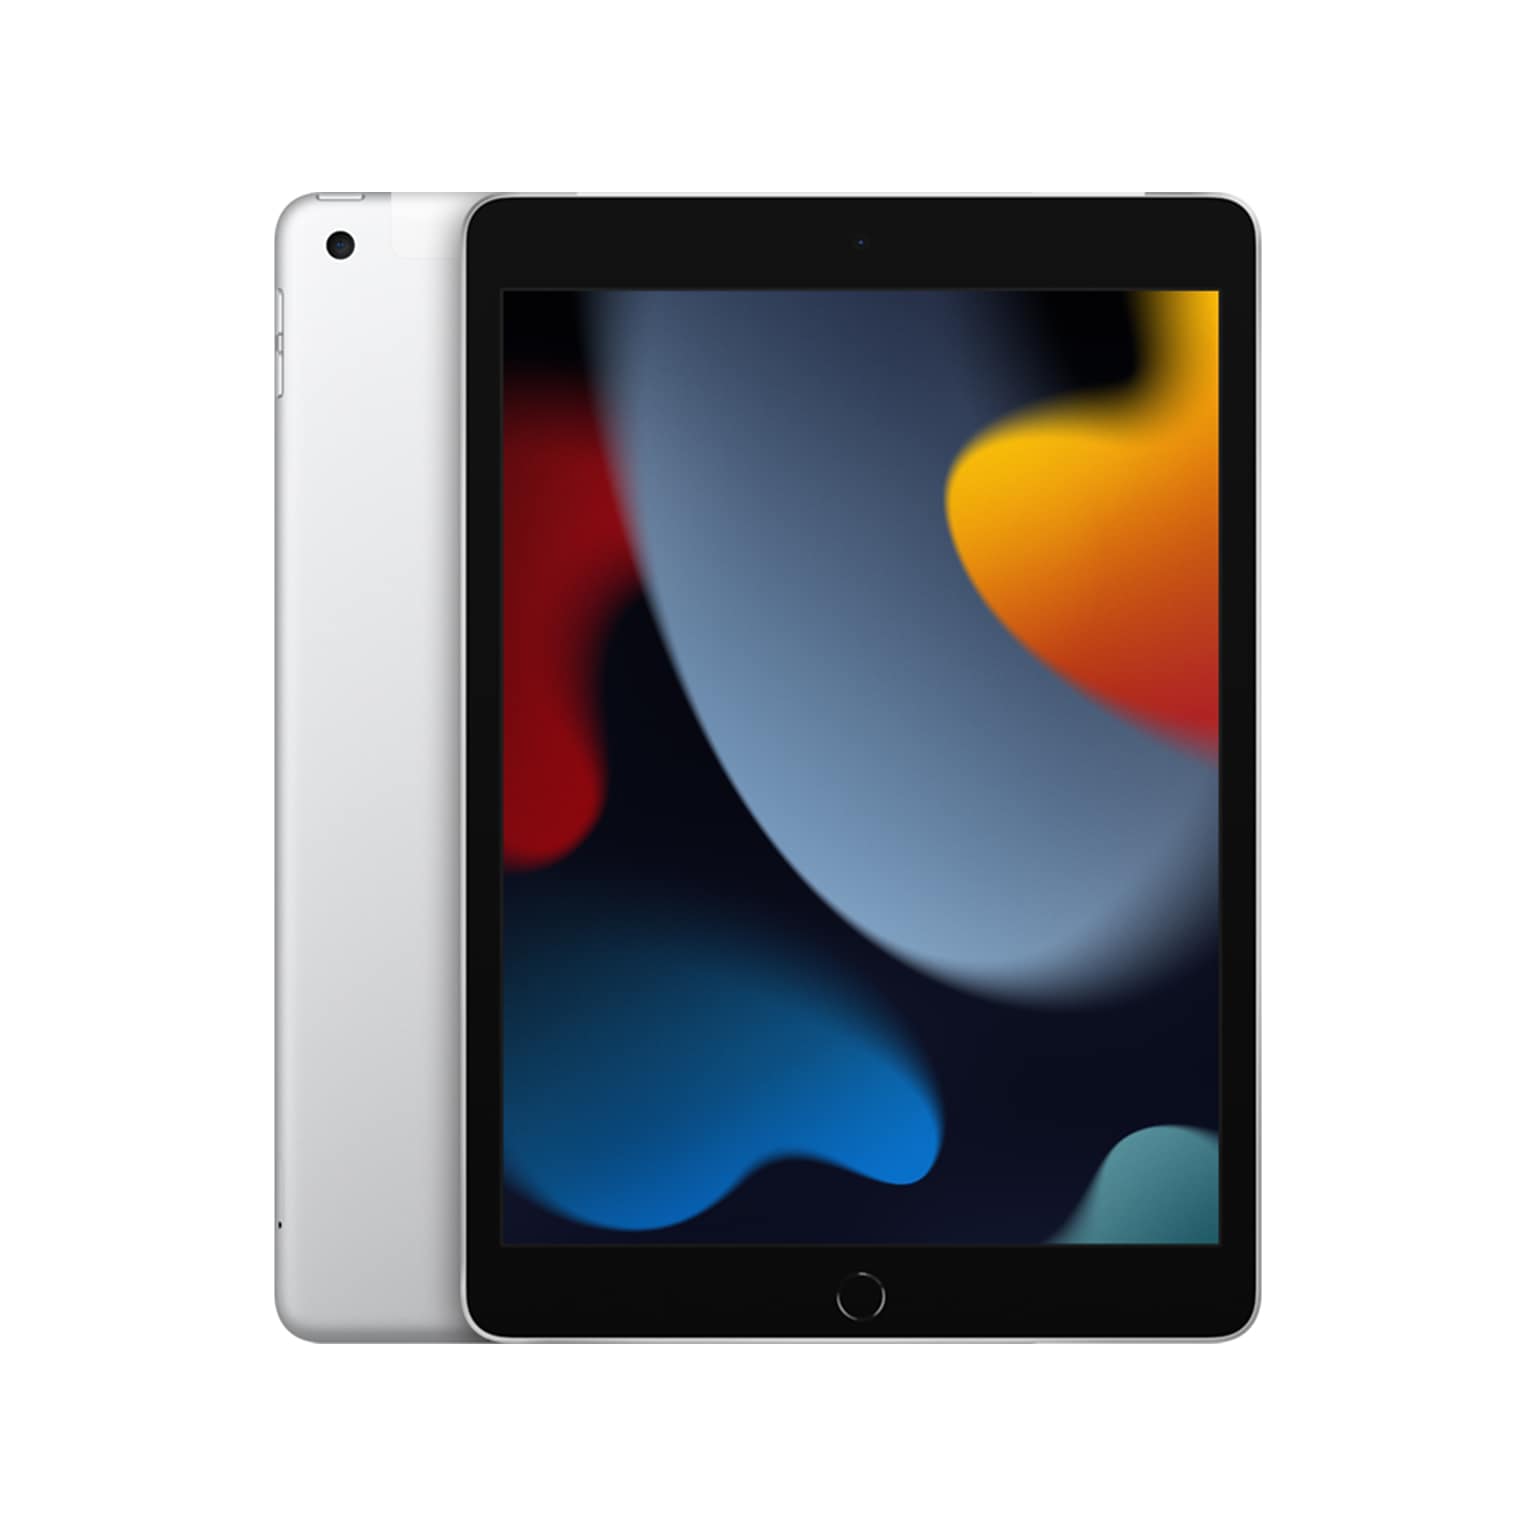 Apple iPad 10.2 Tablet, 64GB, WiFi + Cellular, 9th Generation, Silver (MK673LL/A)